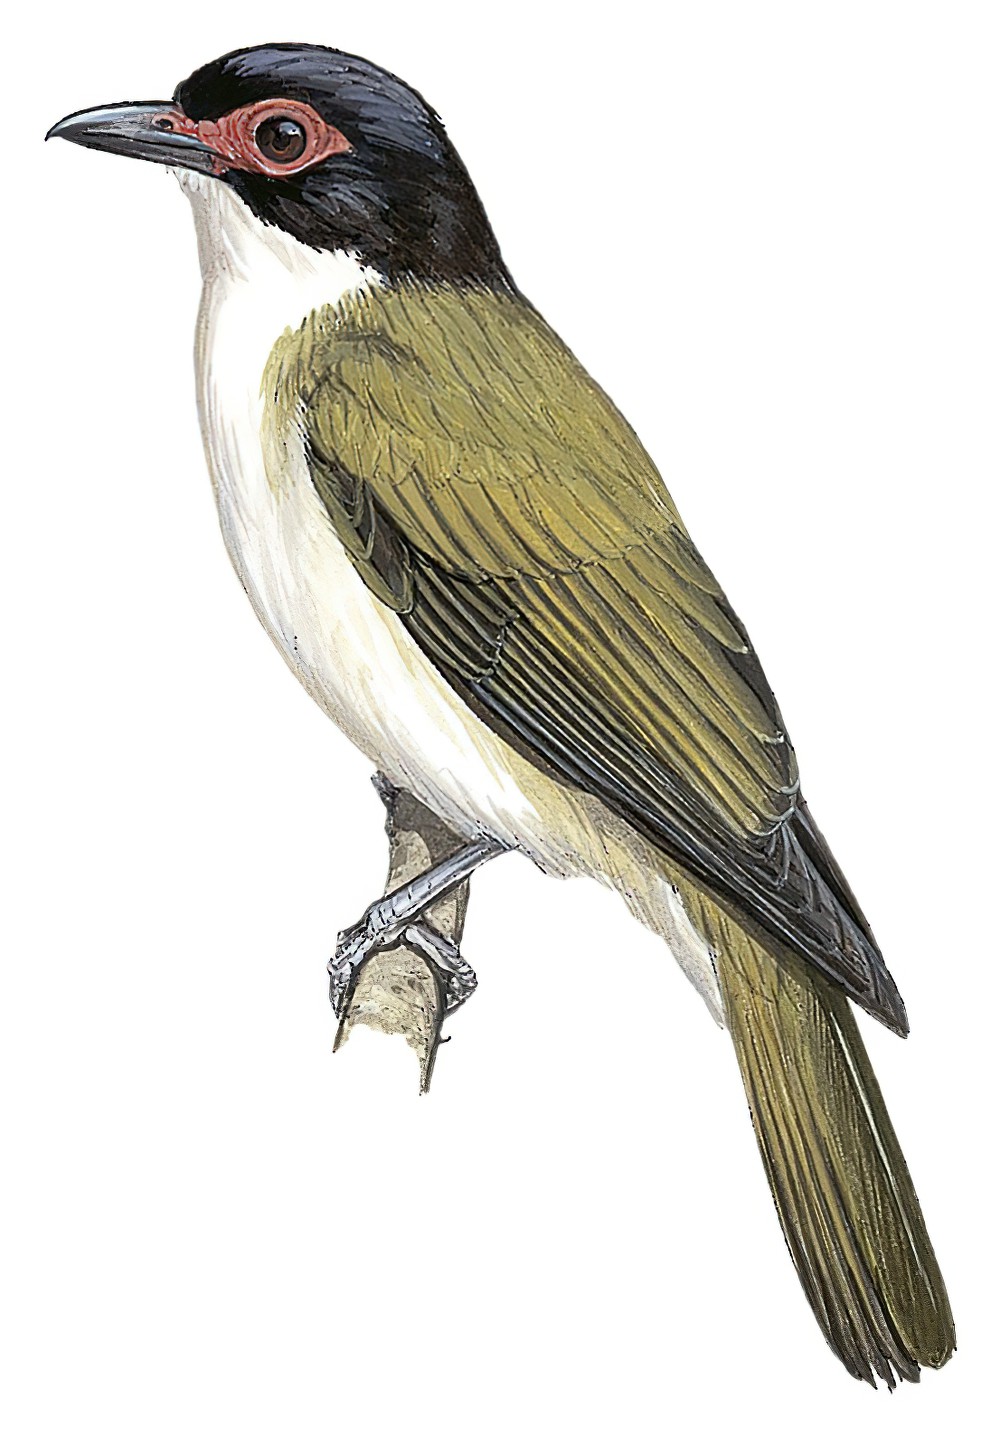 白腹裸眼鹂 / Wetar Figbird / Sphecotheres hypoleucus